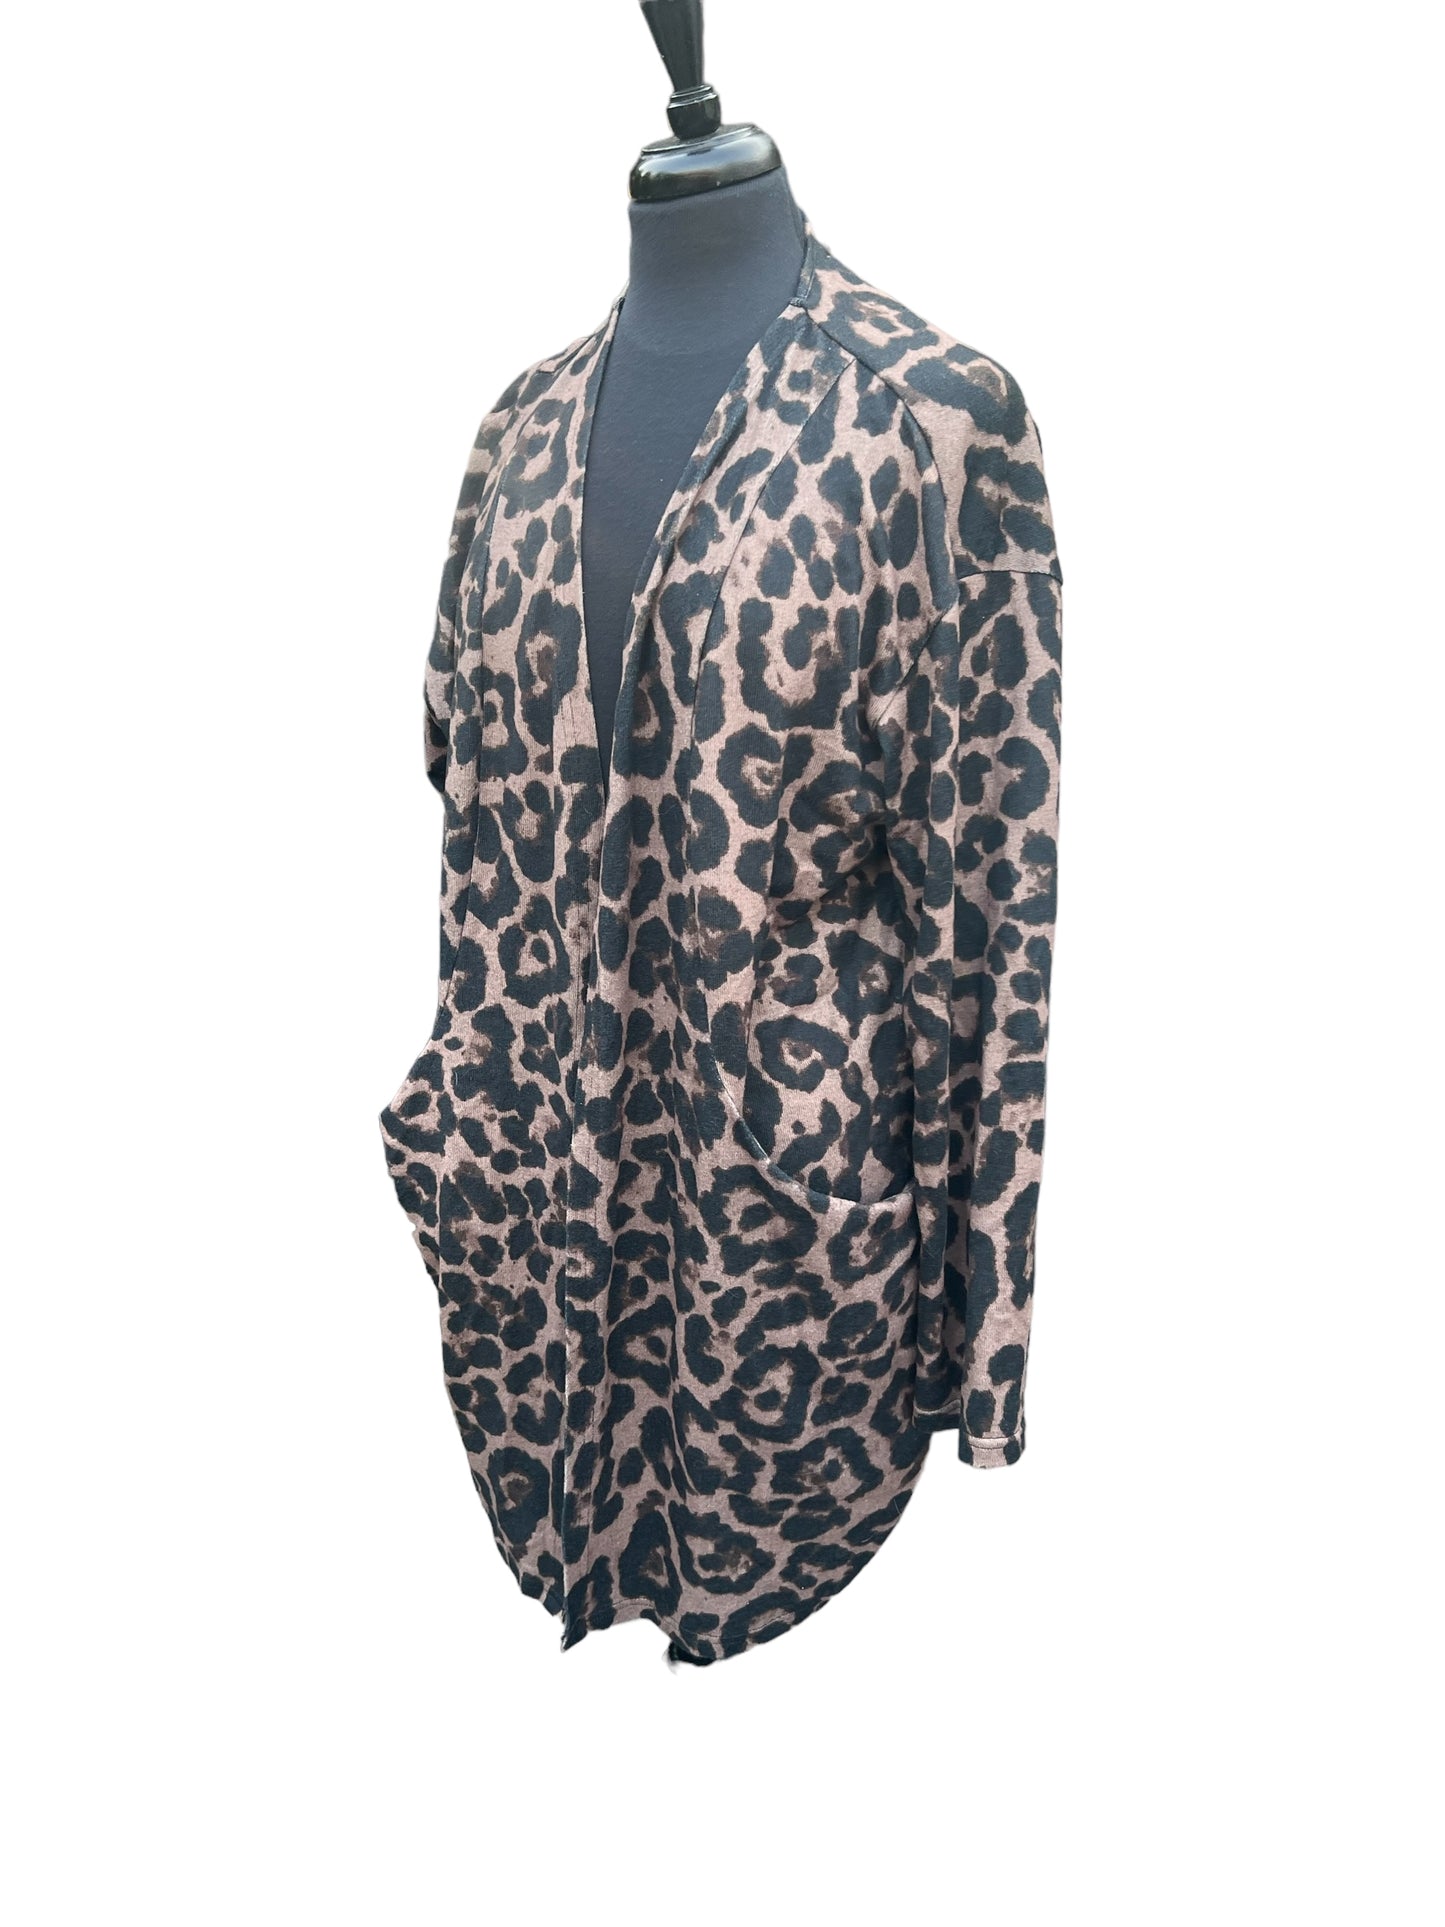 Leopard Print Cardigan